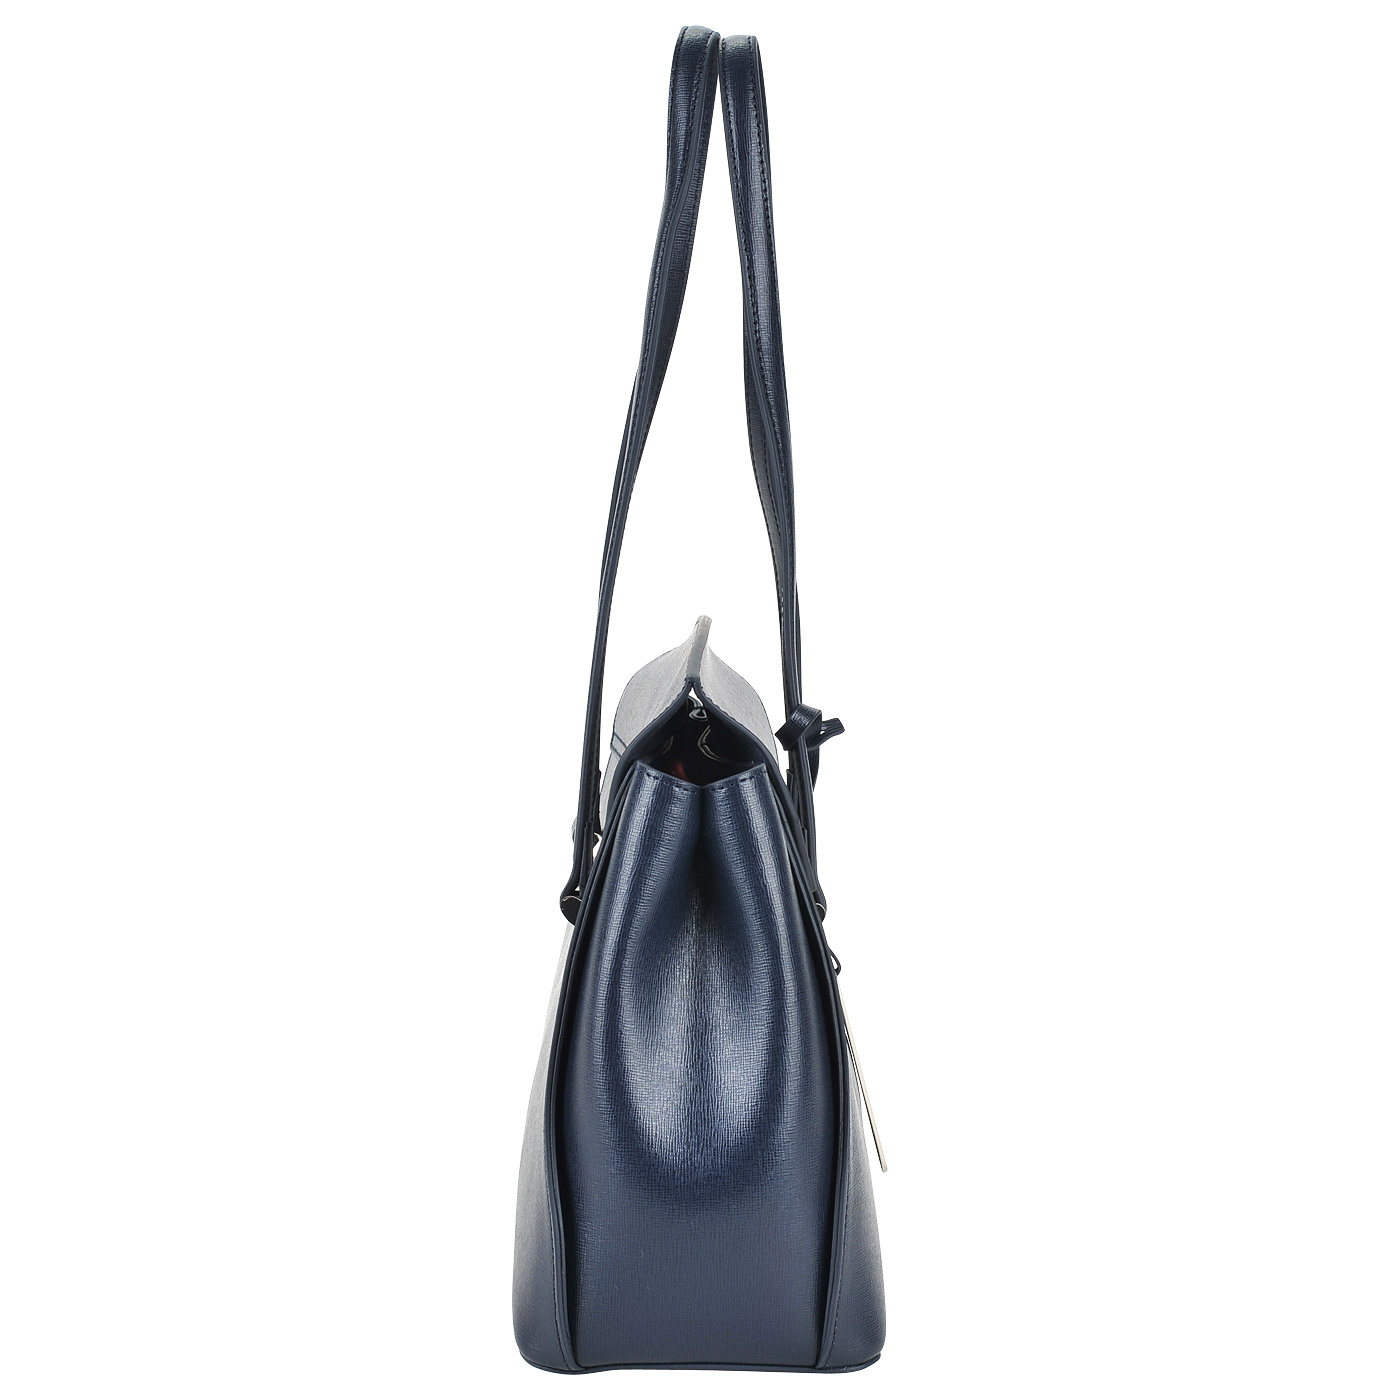 Вместительная кожаная сумка с длинными ручками Cromia Ologram